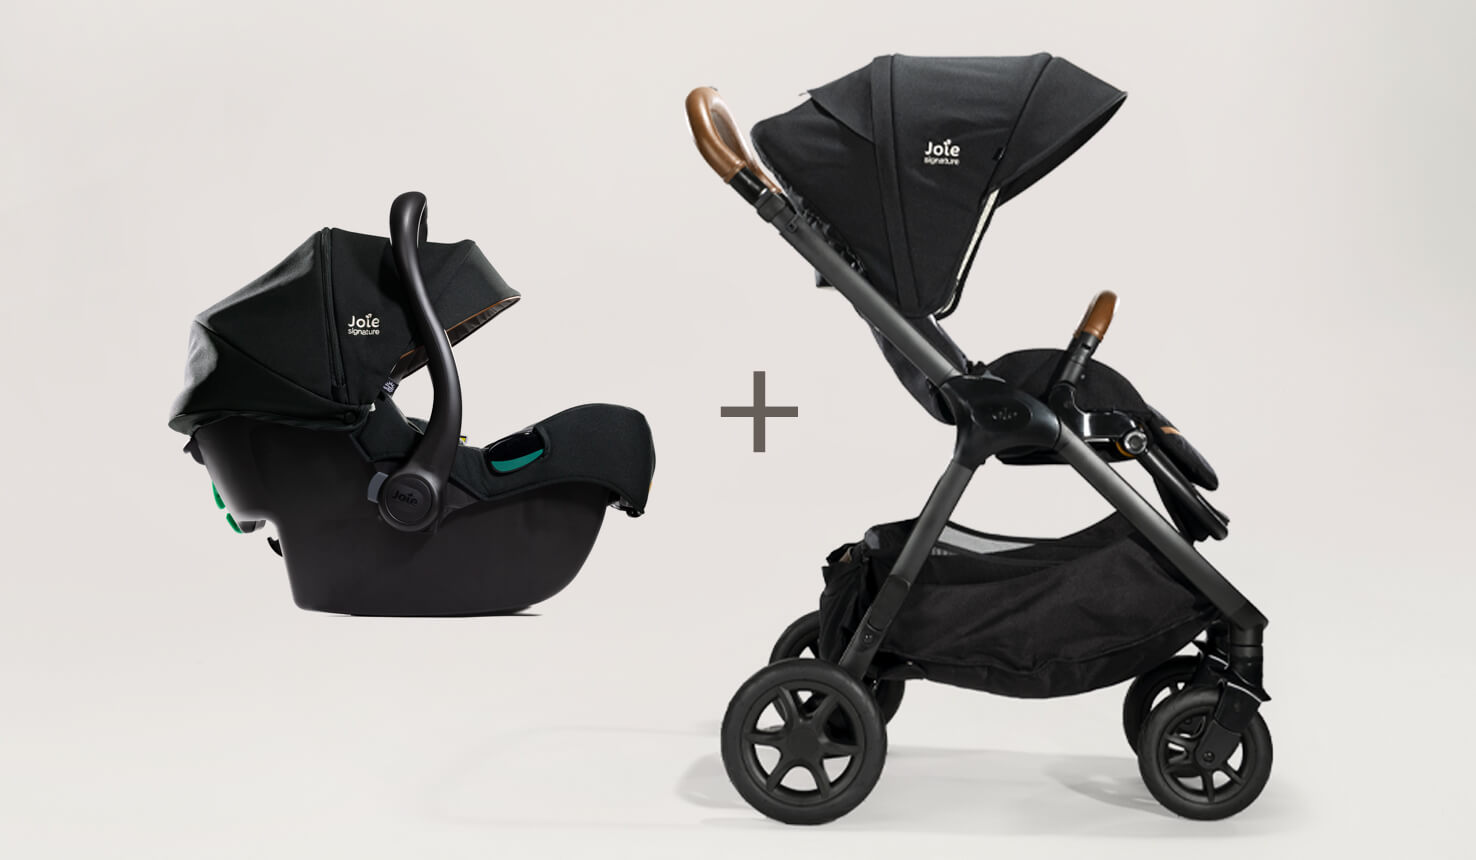 Siège auto pour bébé i-Jemini, coloris noir, vu de profil, signe plus et poussette Finiti noire de profil.